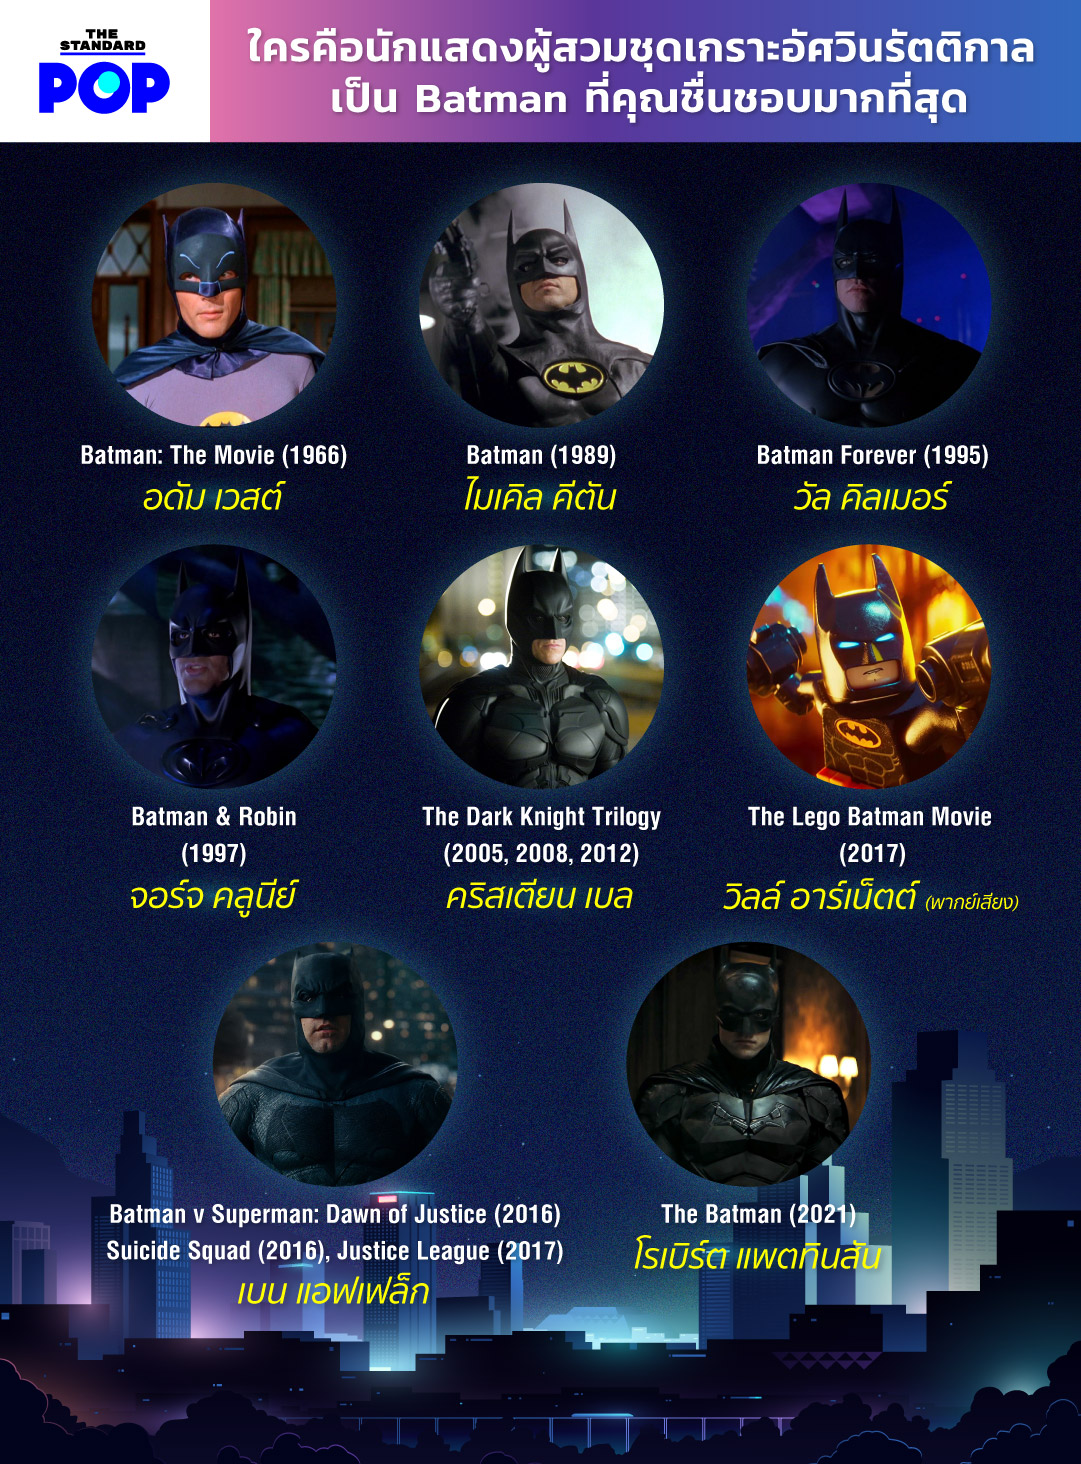 all Batman actors